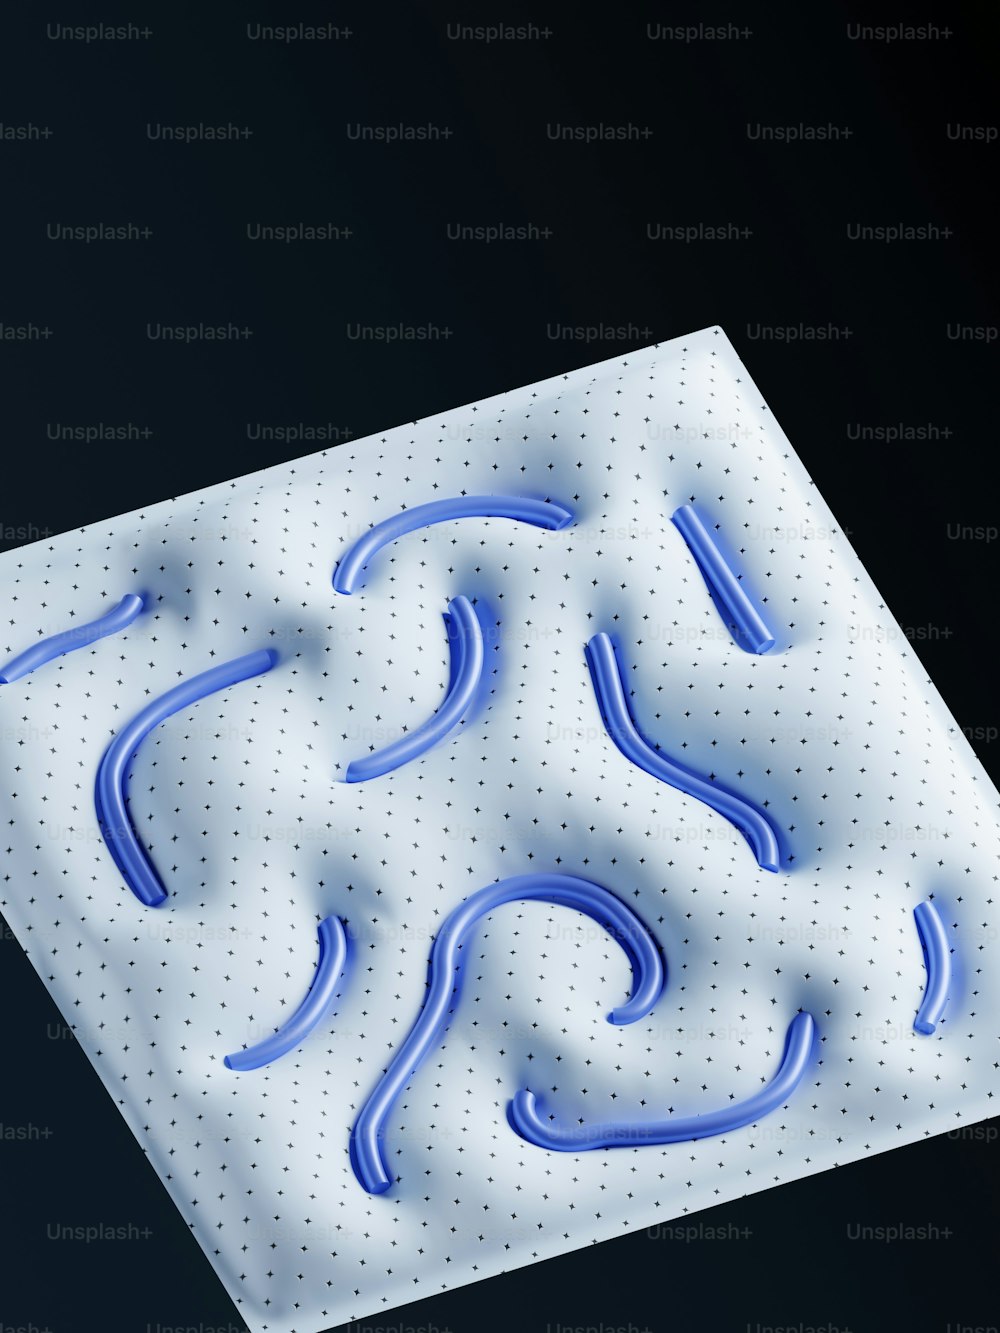 Ein 3D-Bild eines quadratischen Objekts